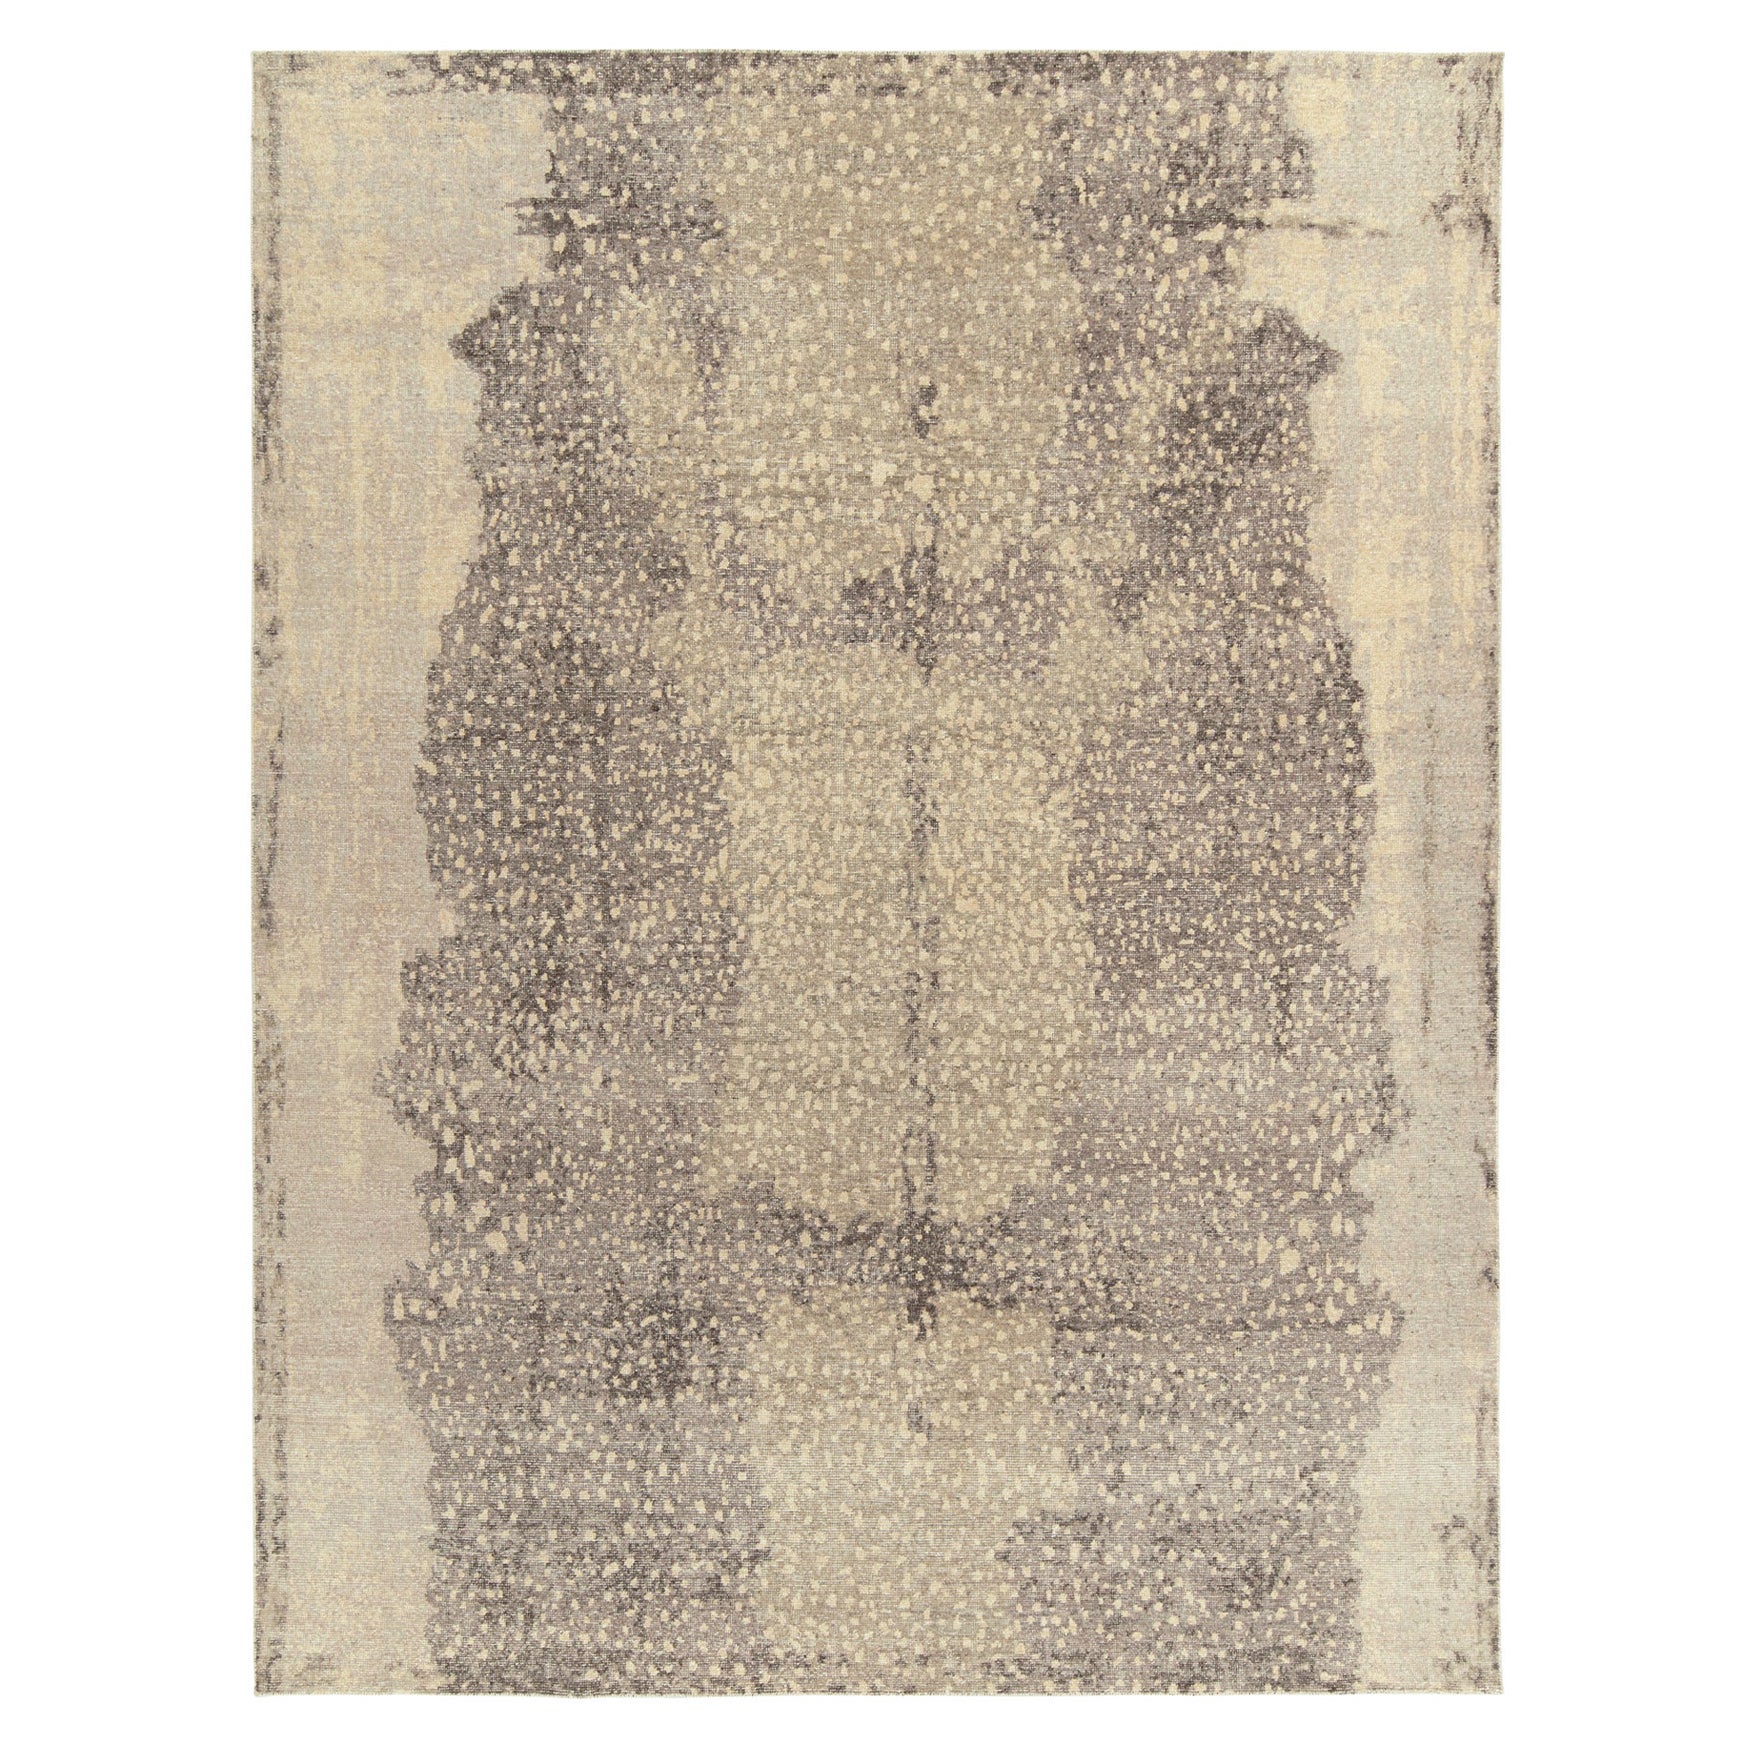 Moderner Teppich im Distressed-Stil von Teppich & Kelim in Beige, Grau mit abstraktem Muster